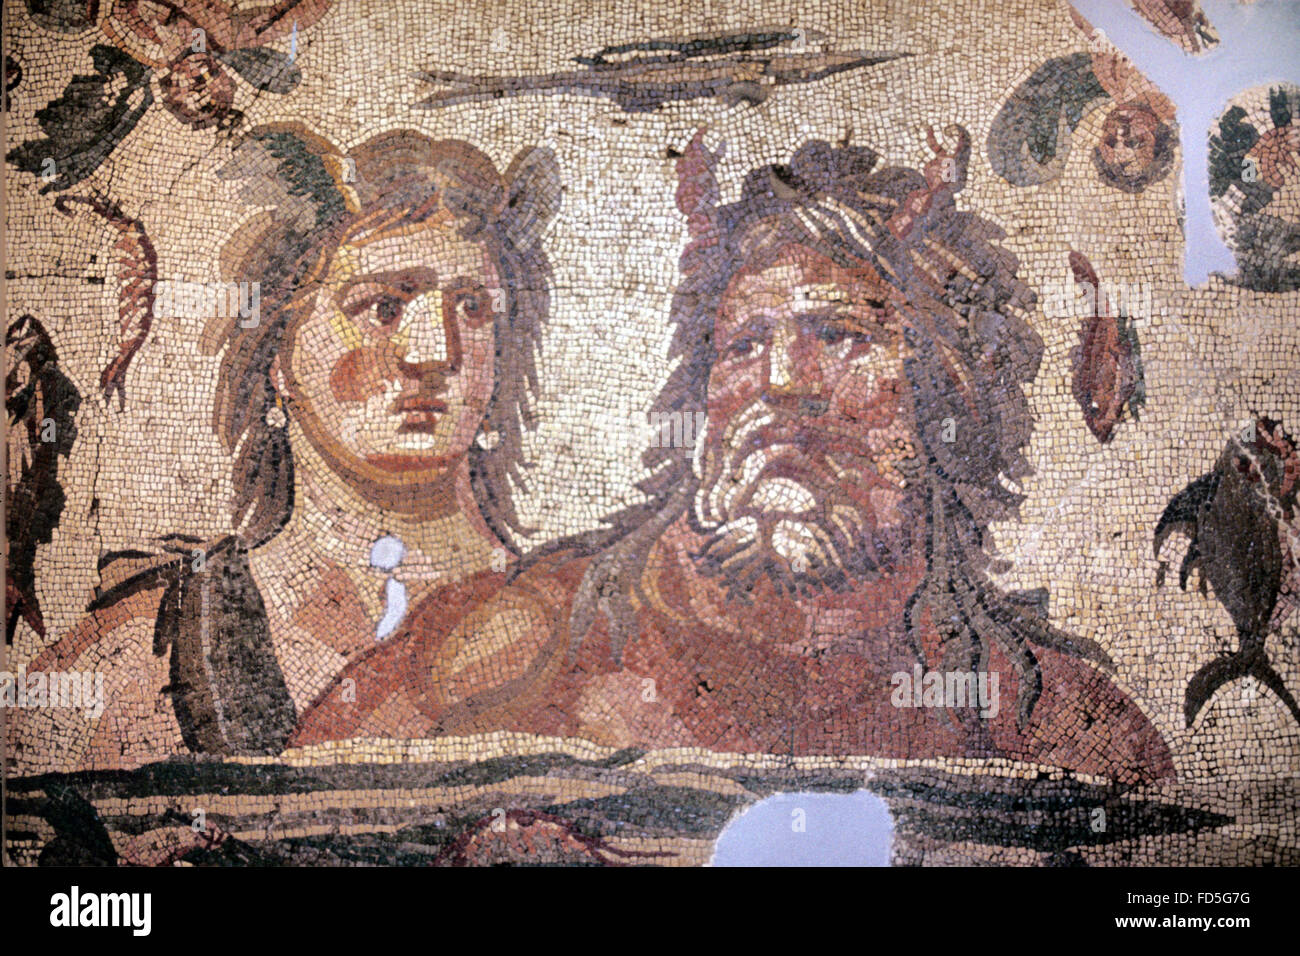 Greek mythology mosaic hi-res stock photography and images - Alamy